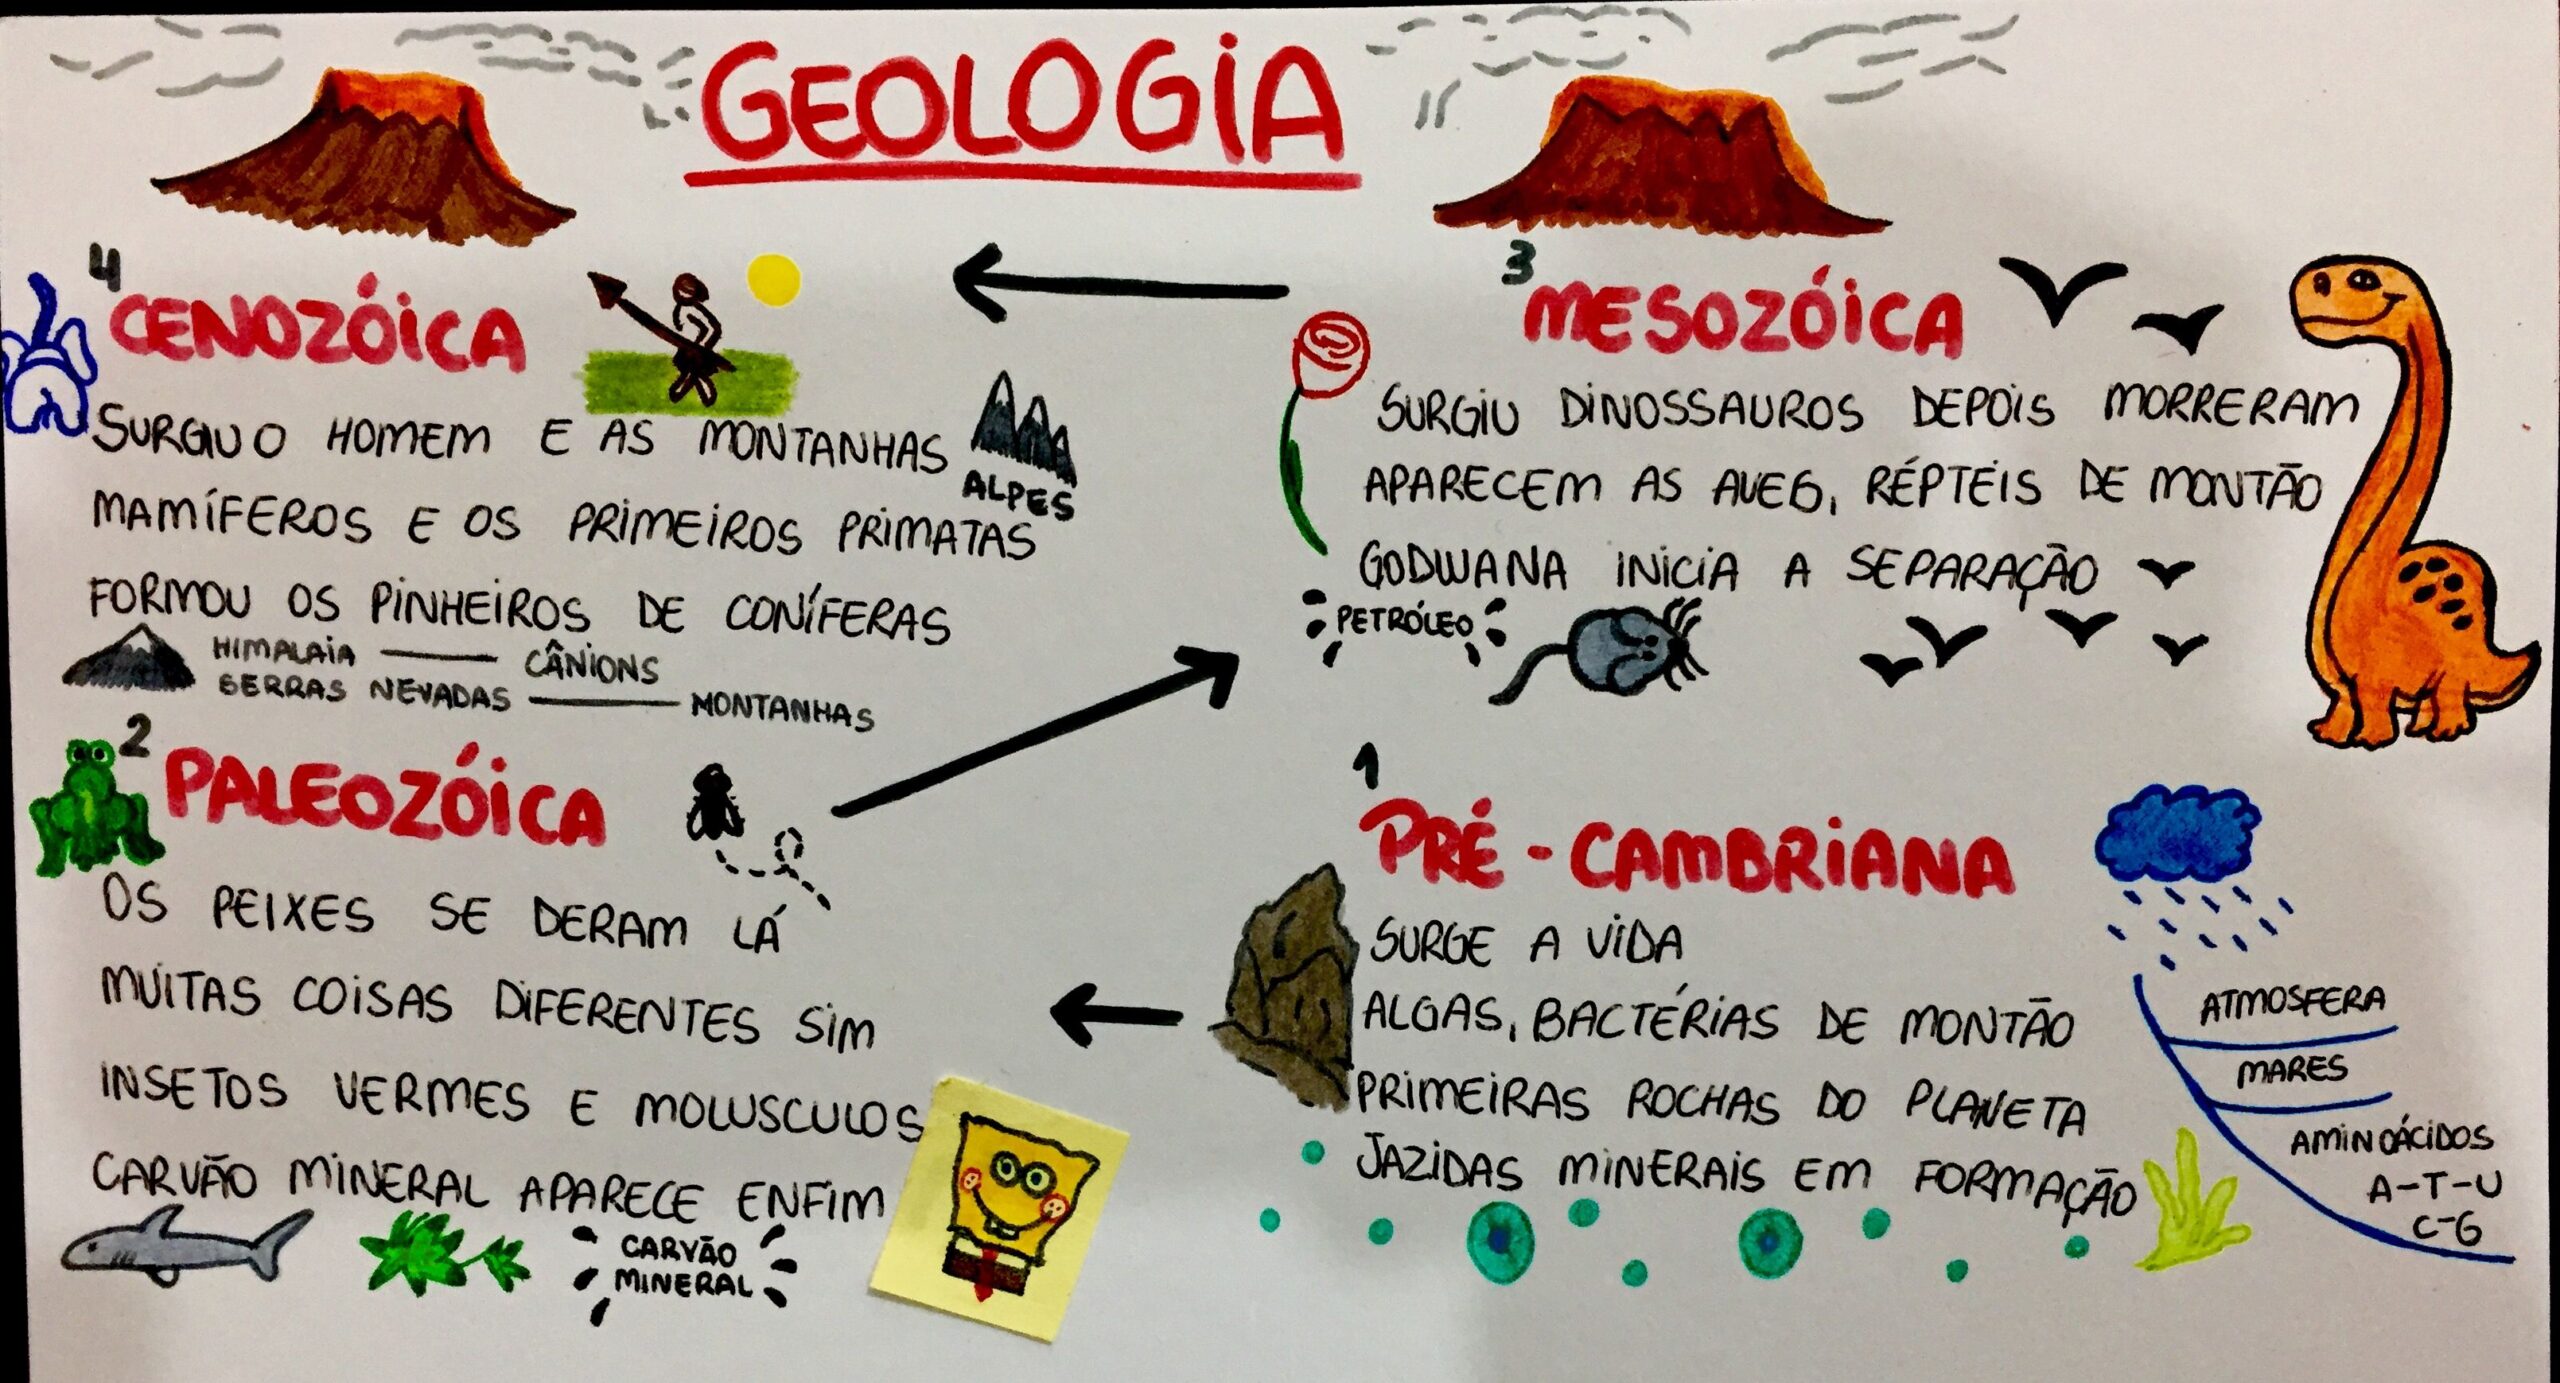 MAPA SOBRE ERAS GEOLÓGICAS - STUDY MAPS